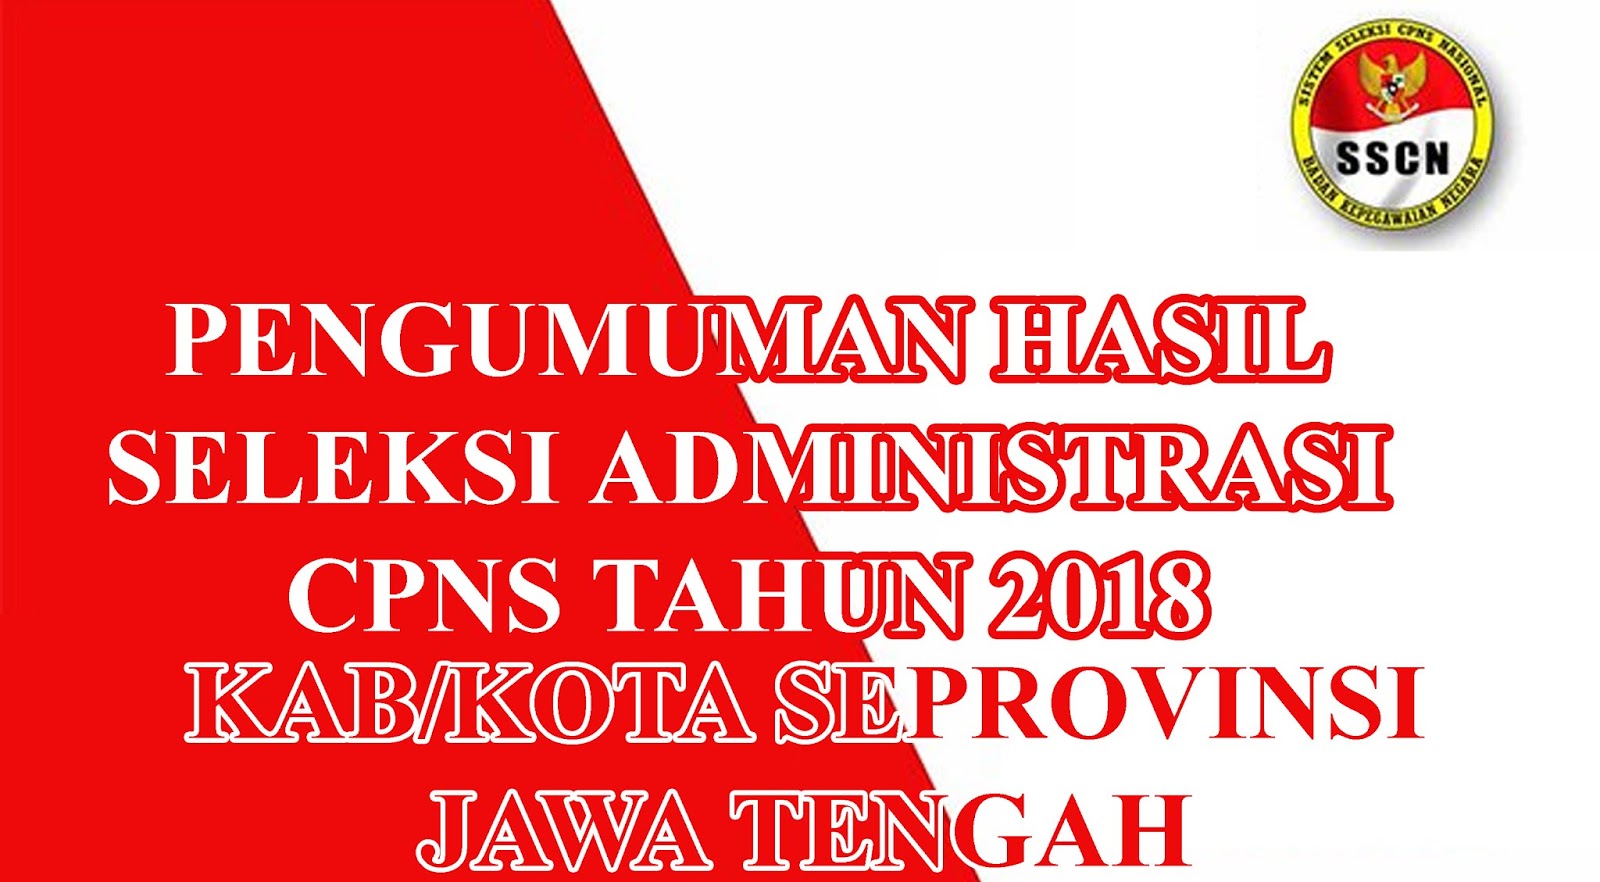 Pengumuman Seleksi Administrasi Cpns Kabkota Provinsi Jawa